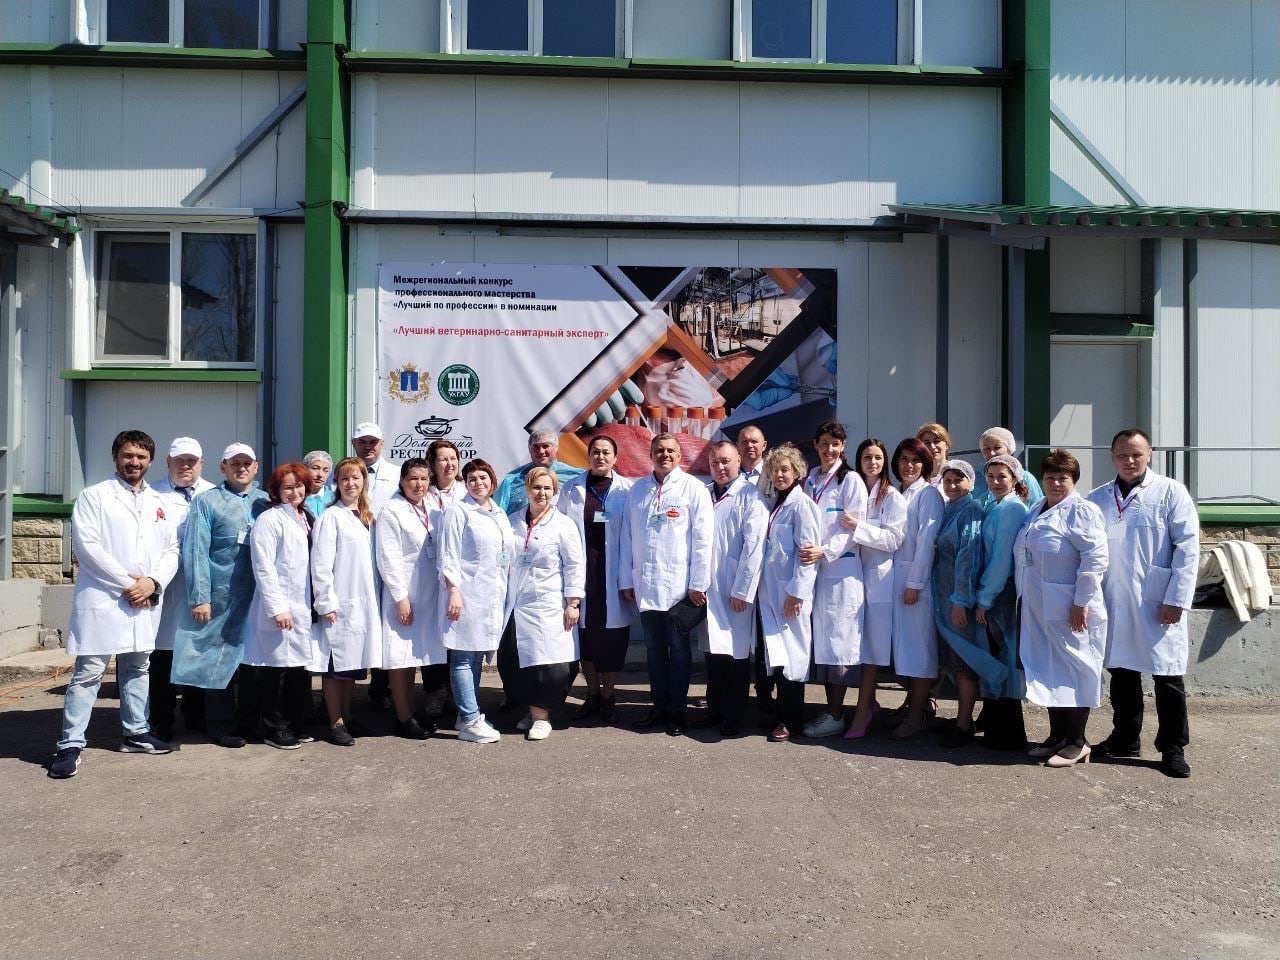 Ульяновский мясокомбинат «А-Групп» принял межрегиональный конкурс сан-вет врачей «Лучший по профессии»